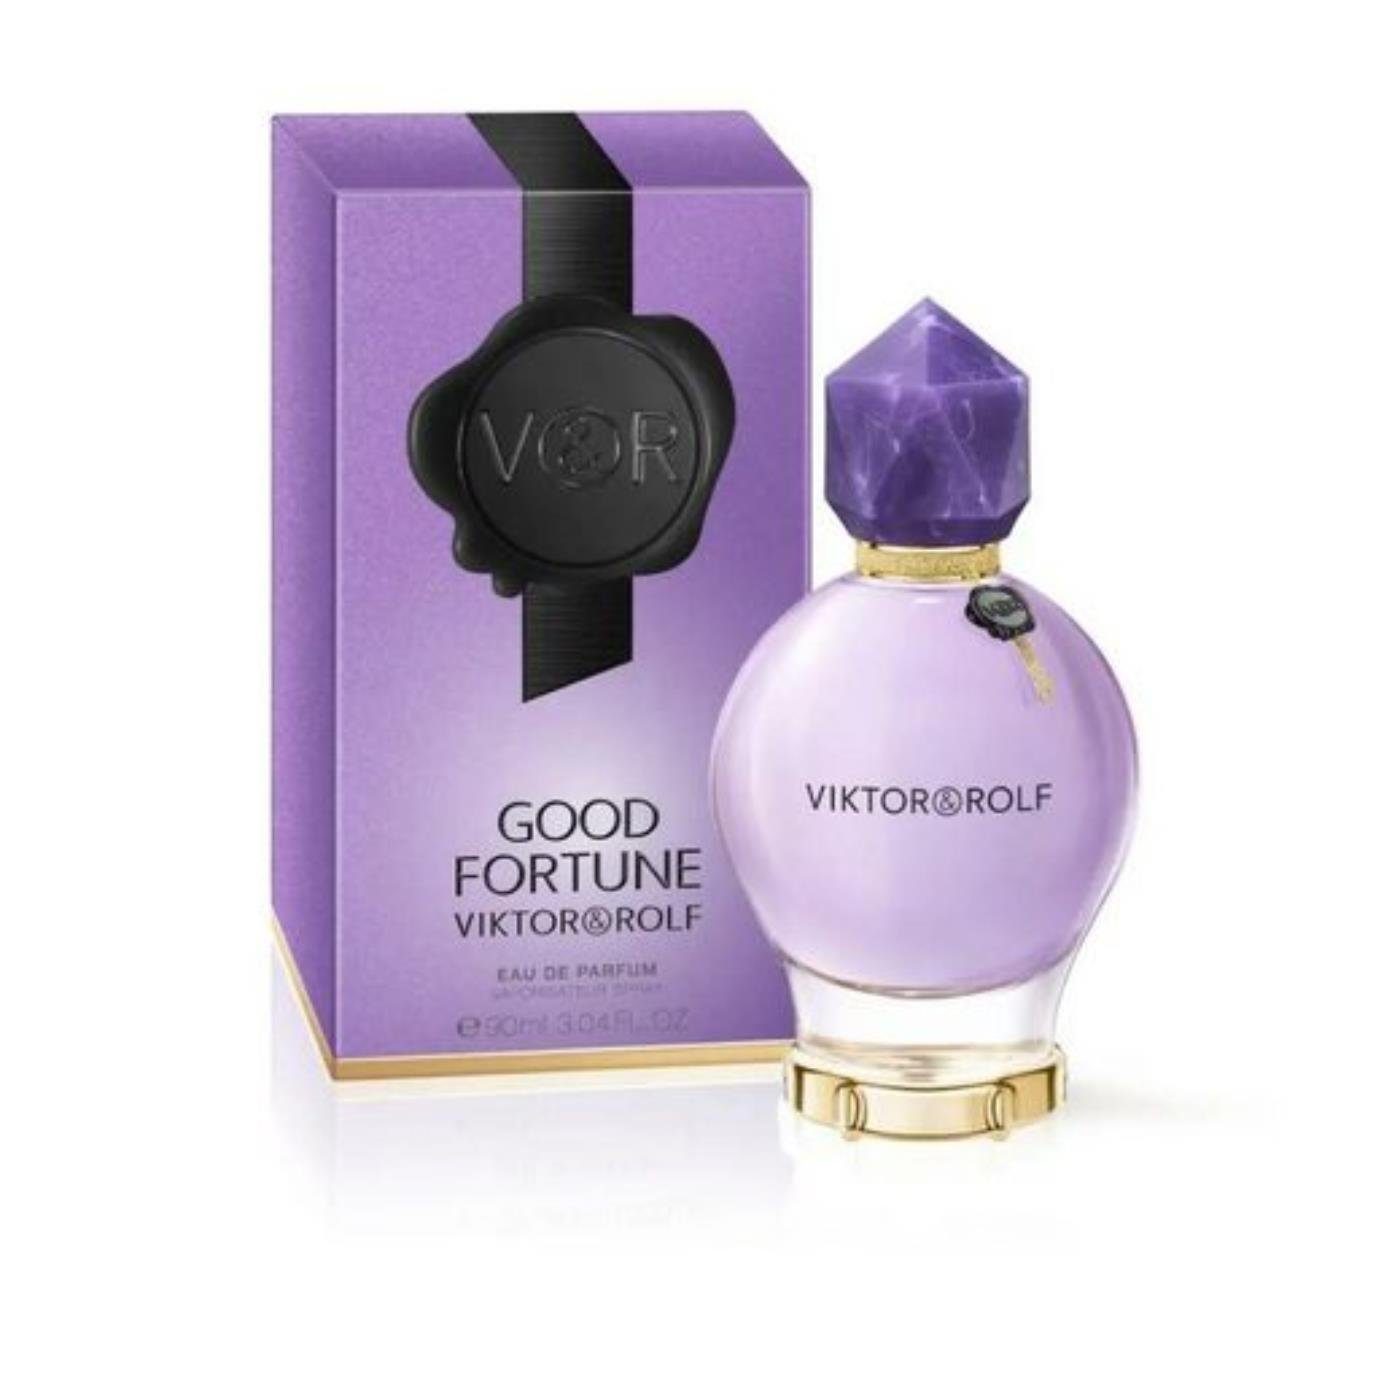 & Good & Rolf Viktor Fortune Eau Rolf Eau Viktor Parfum de de Parfum